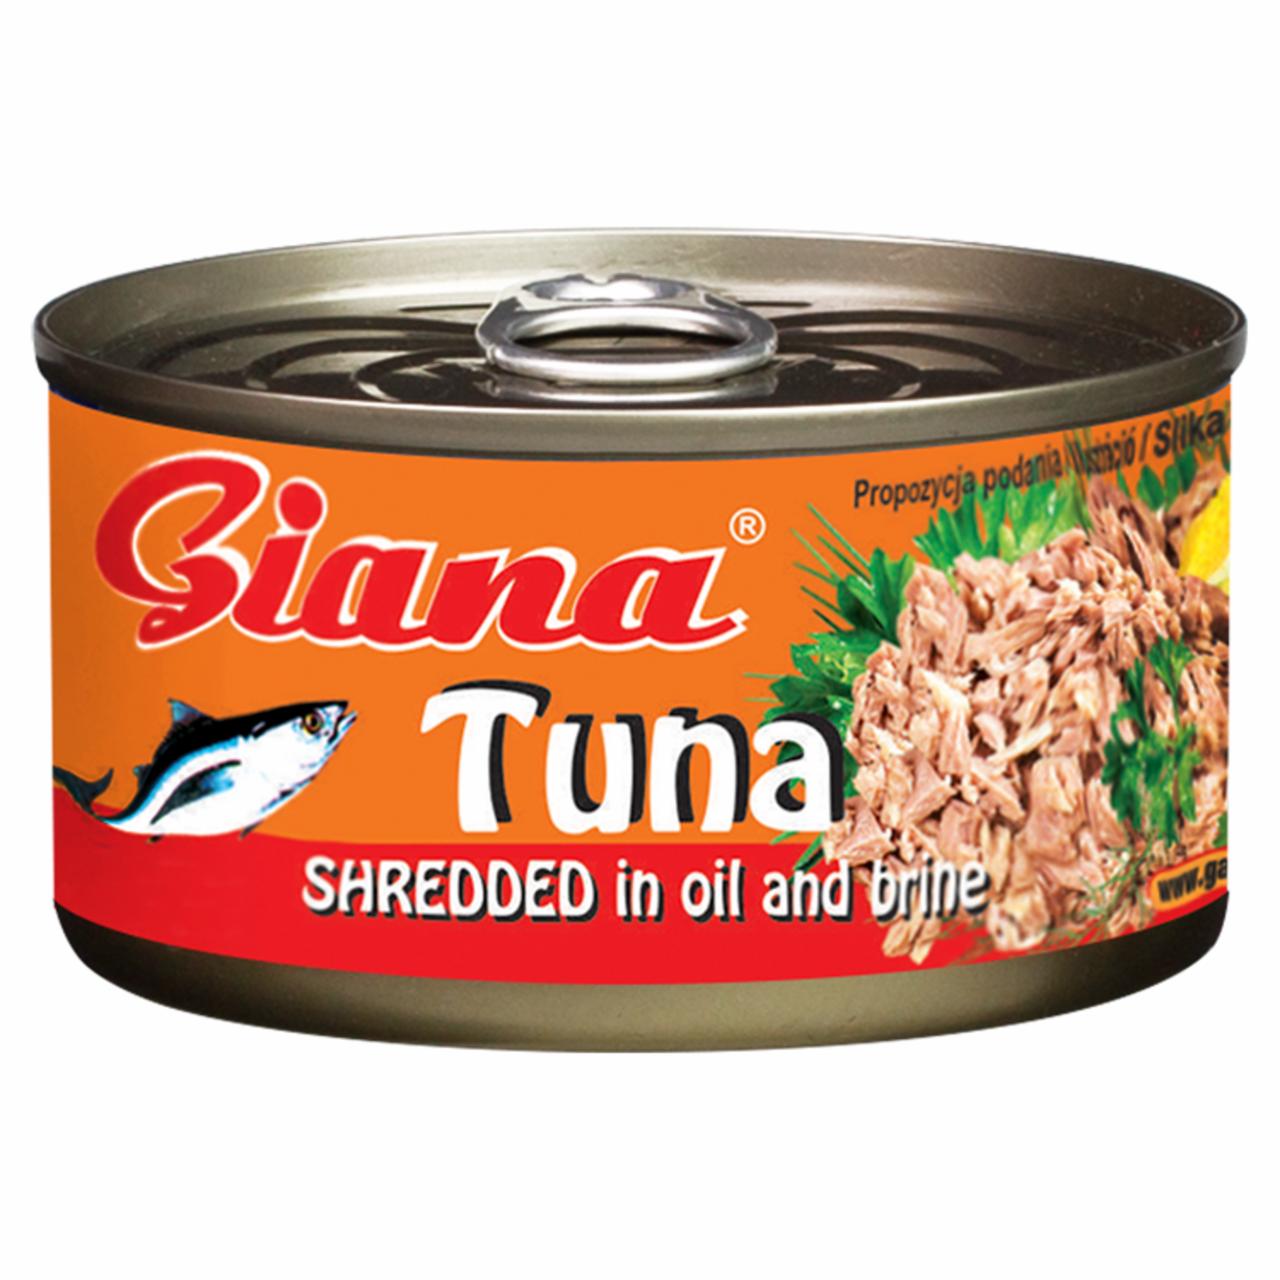 Képek - Giana aprított tonhal növényi olajban és sós lében 185 g